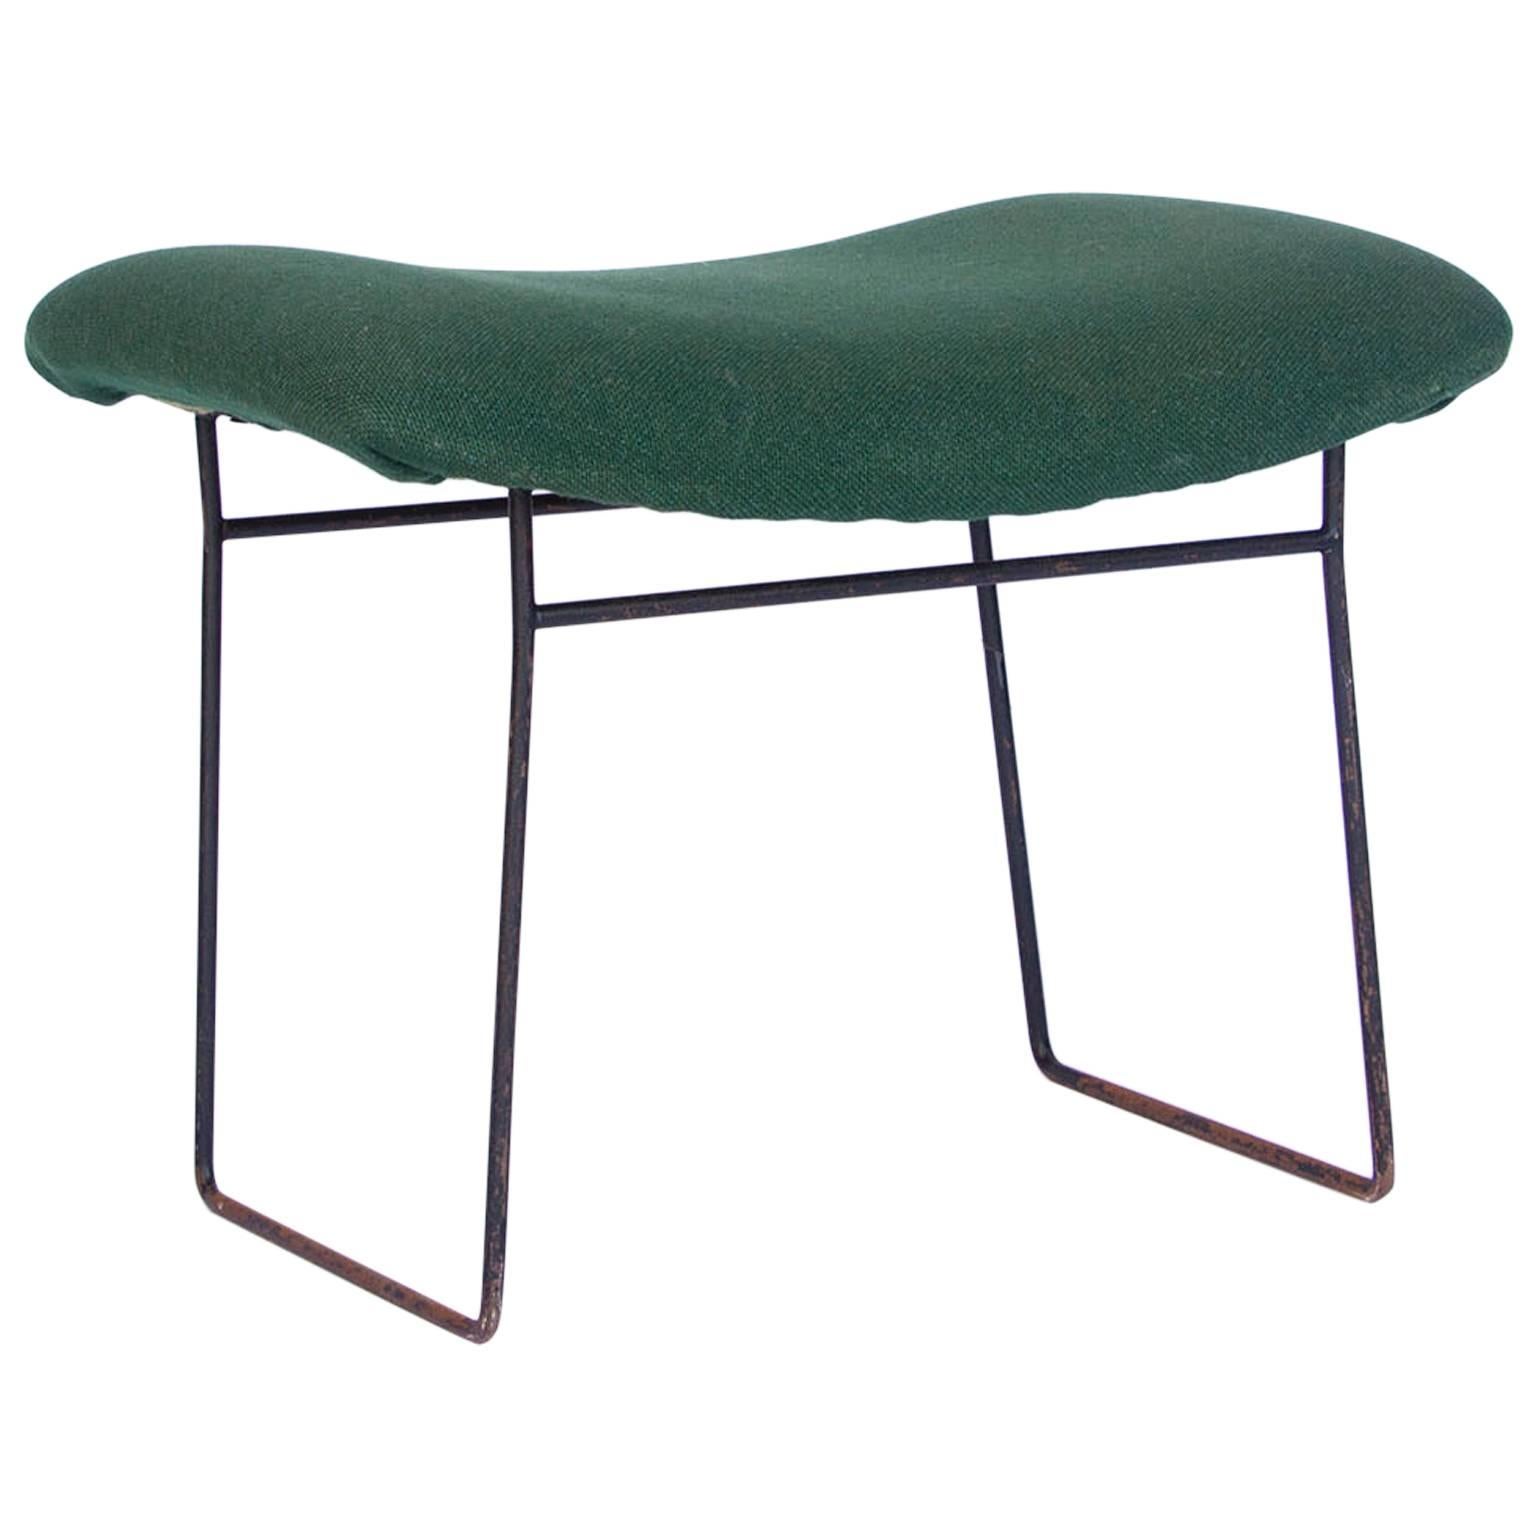 1952, Harrie Bertoia, Footstool for Bird Chair